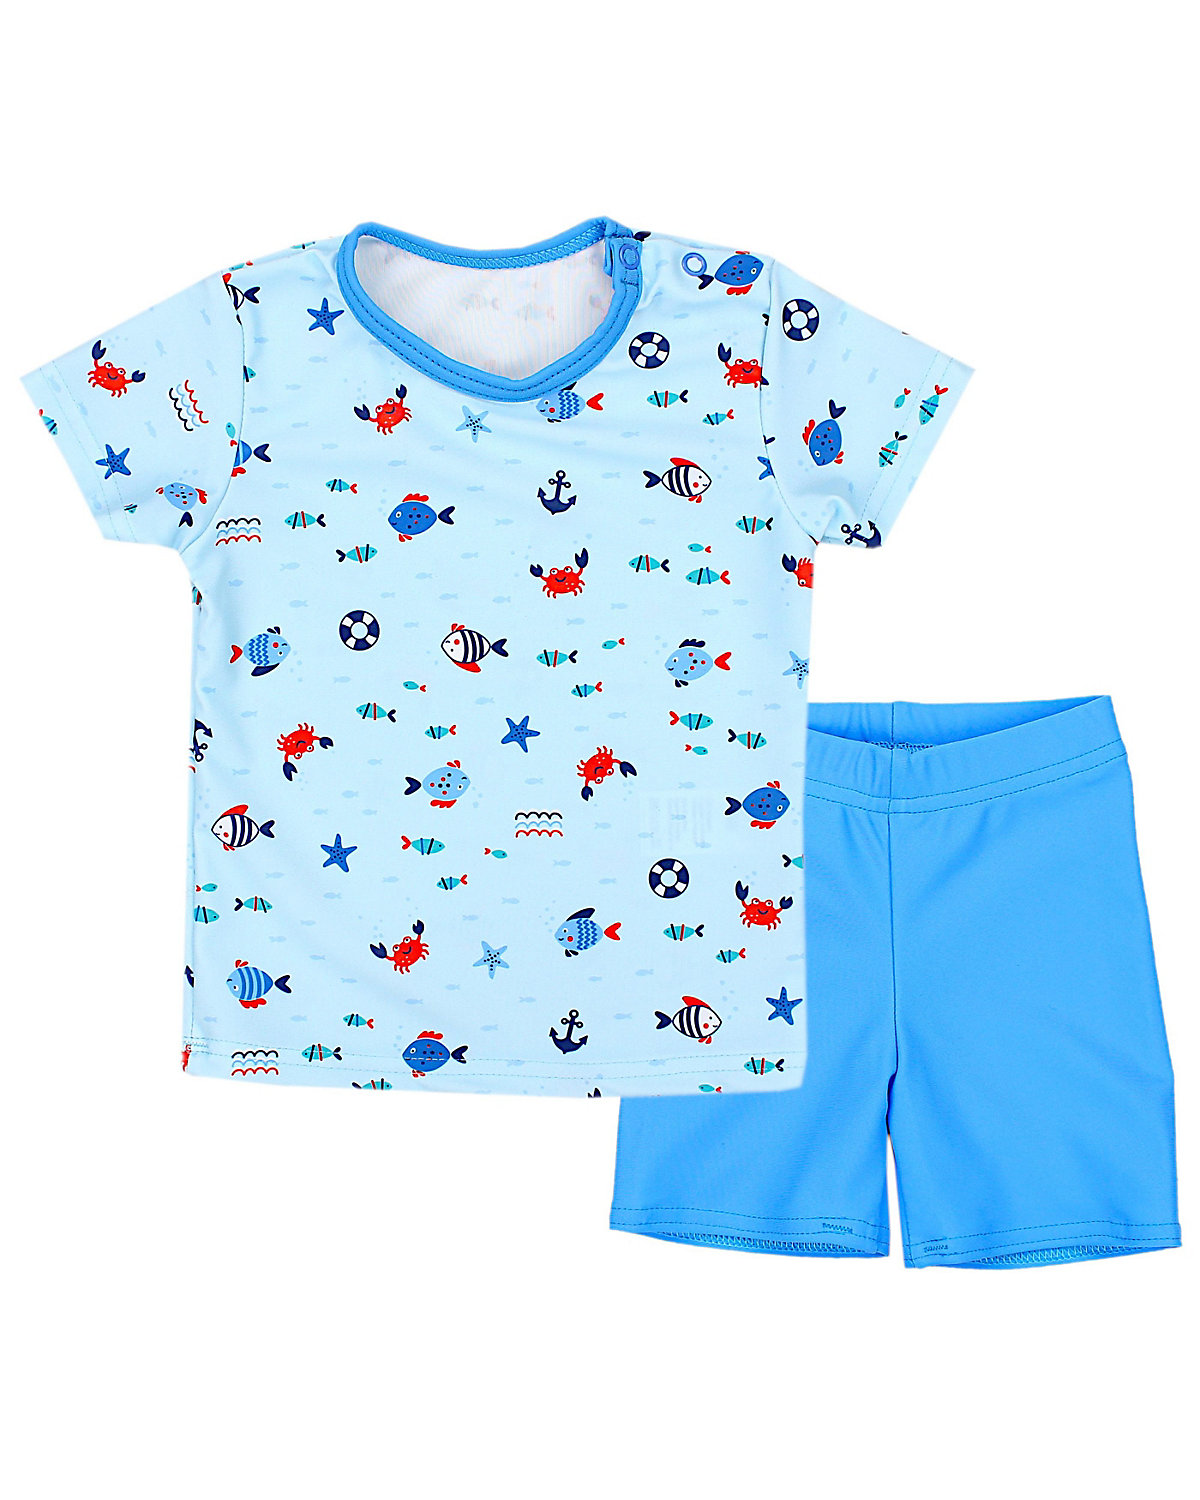 Aquarti Baby Jungen Bade-Set Zweiteiliger Badeanzug T-Shirt Hose für Jungen